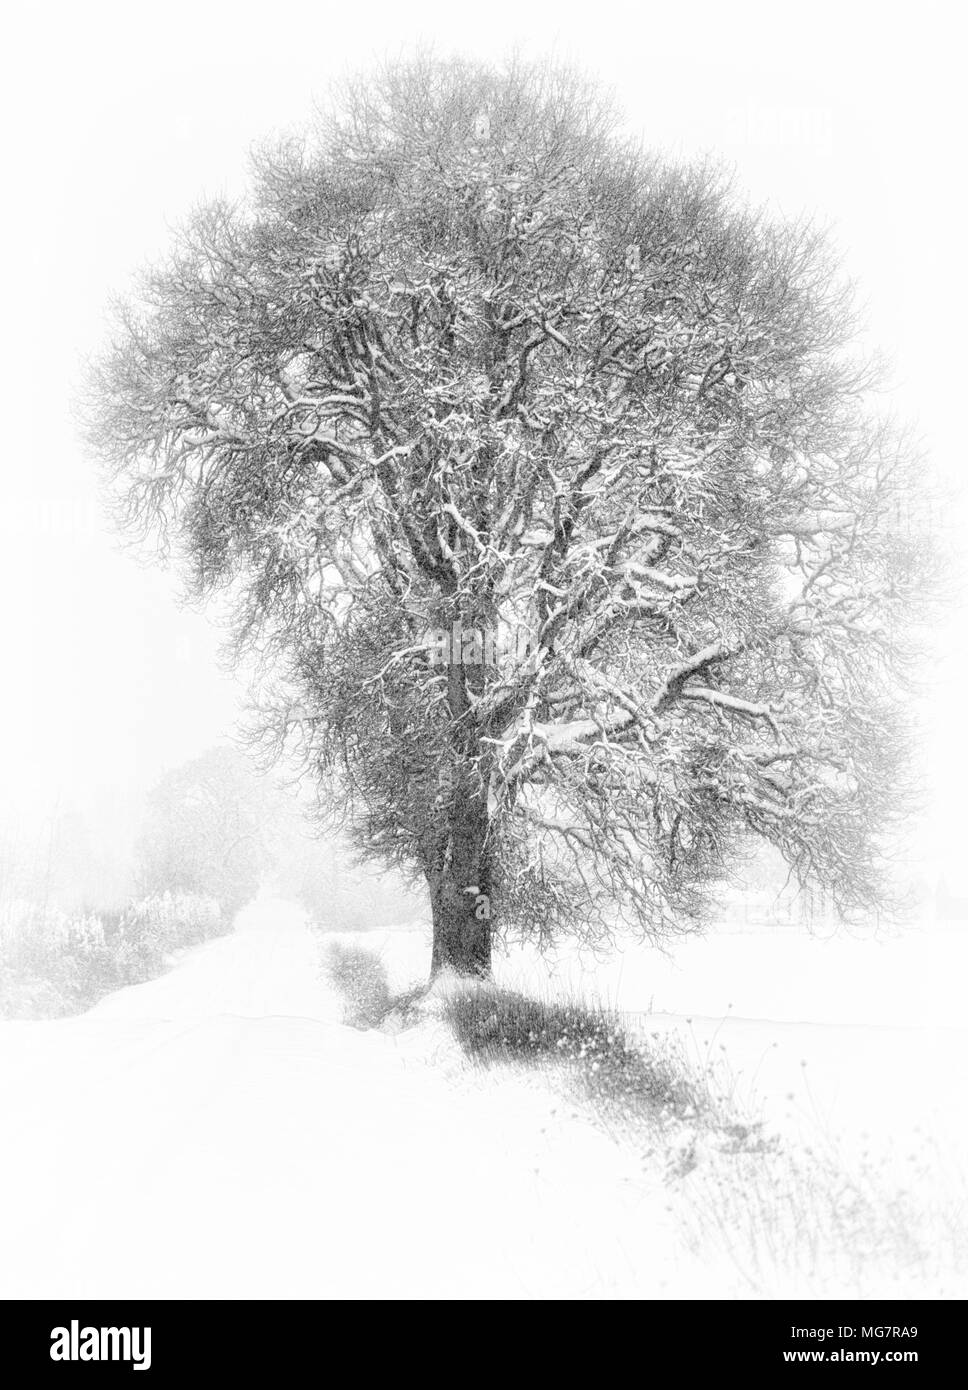 La caduta di neve copre questa strada di campagna con un lone White Oak tree sul confine. Foto Stock